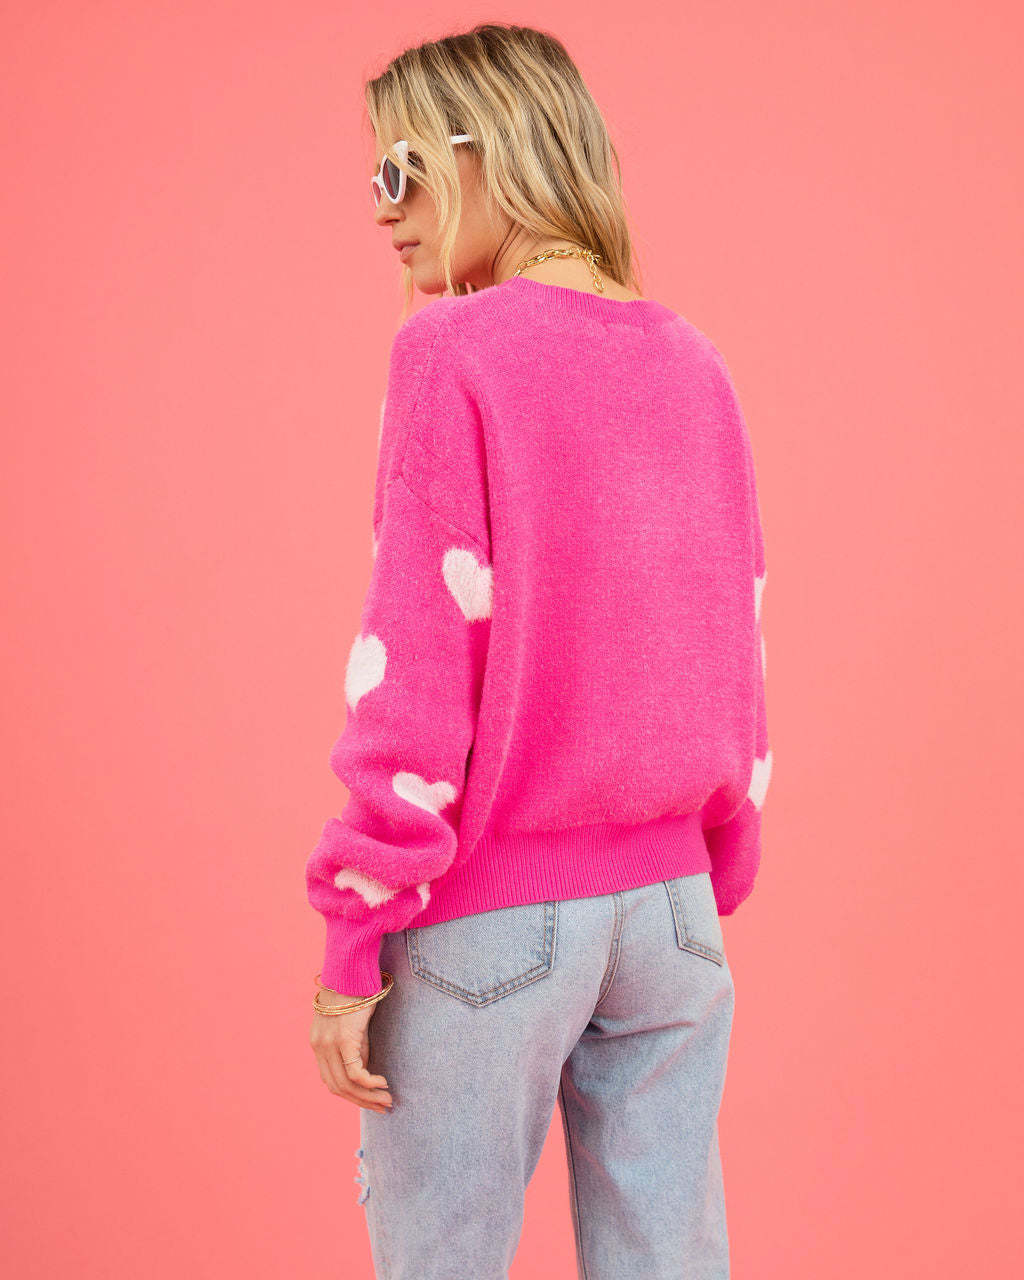 Women's Sweater Love Valentine's Day Round Neck Pullover